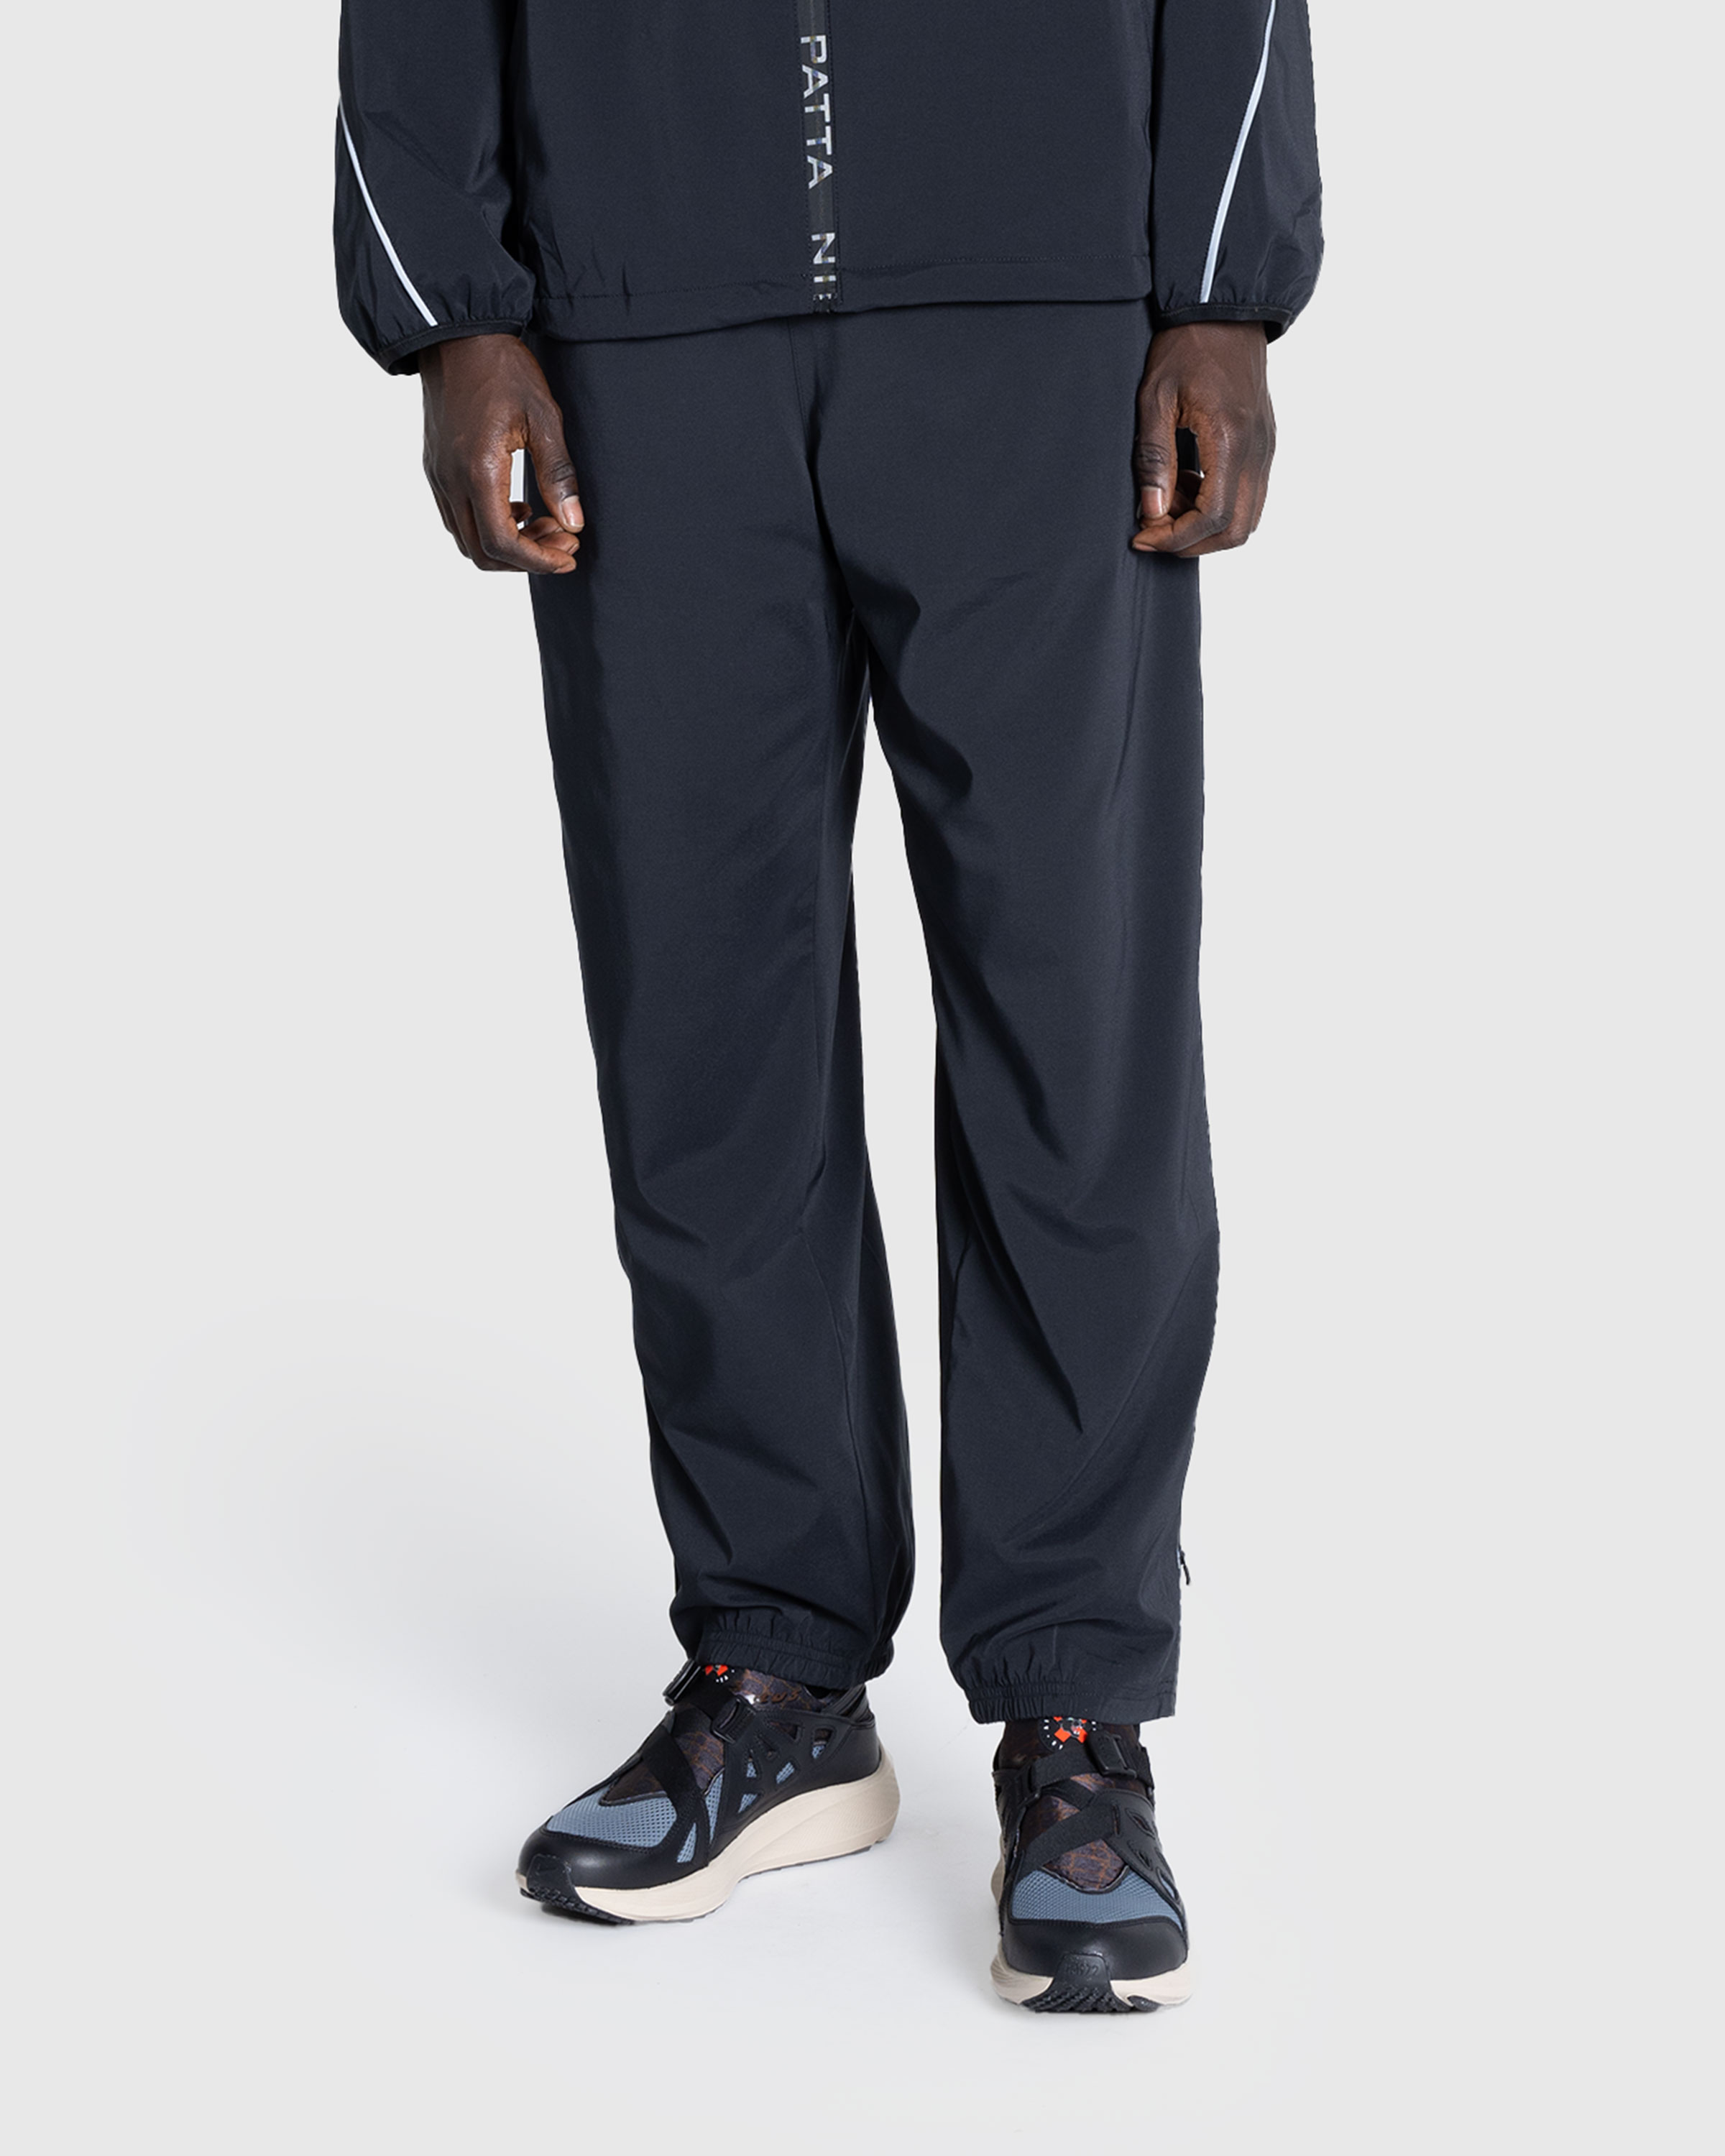 Nike x Patta – Men's Track Pants Black - Track Pants - Black - Image 2